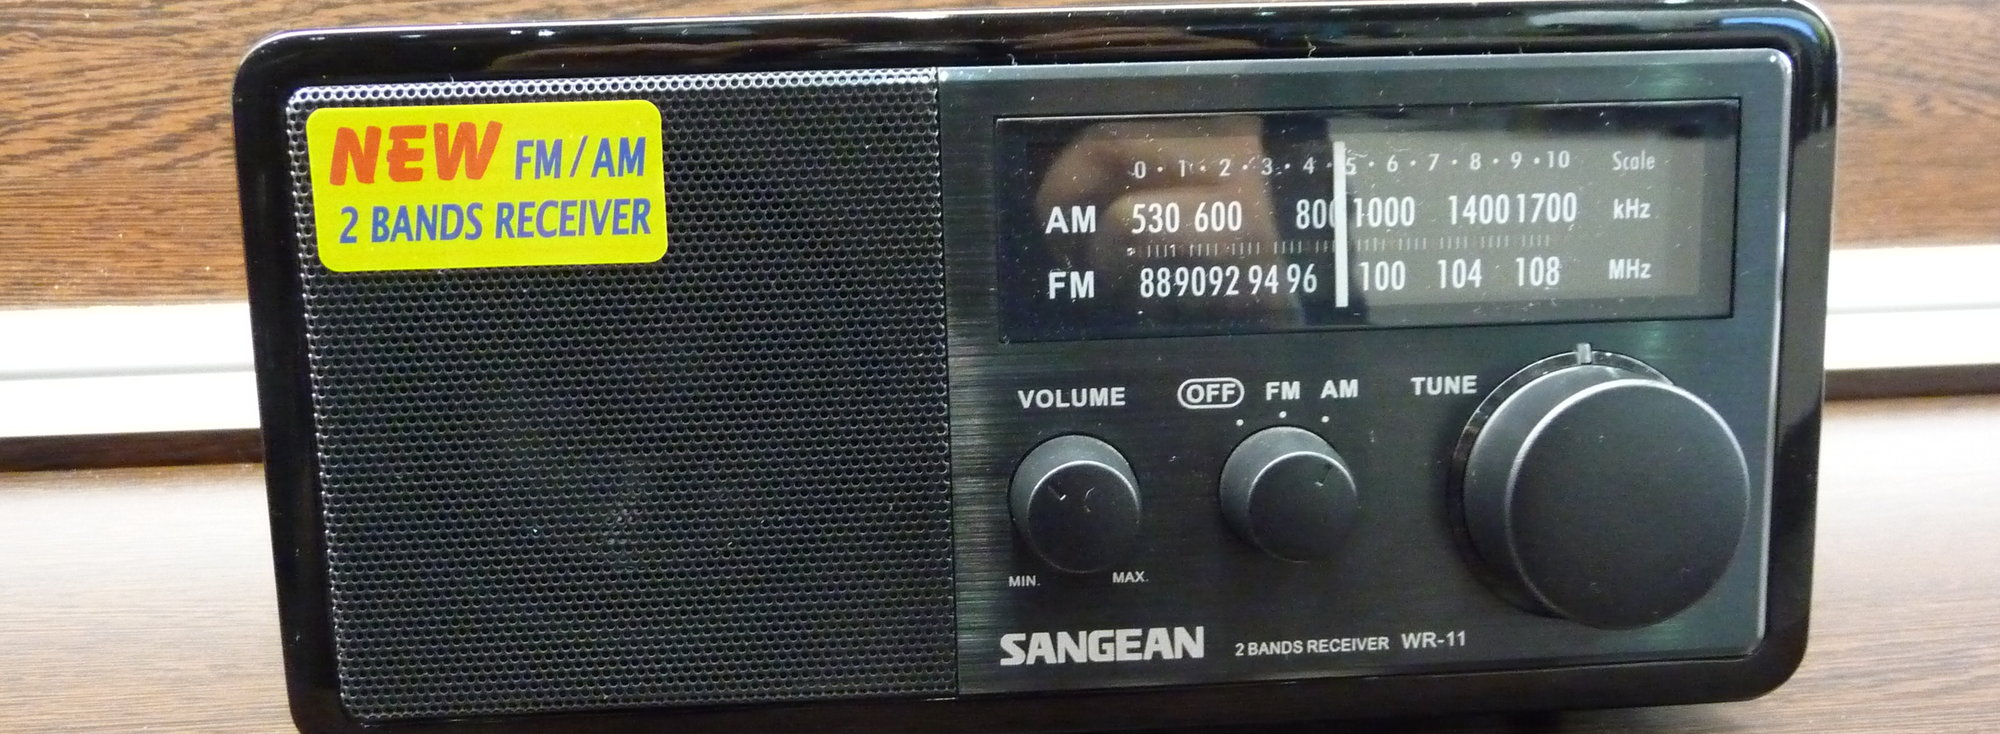 Ny FM-radio